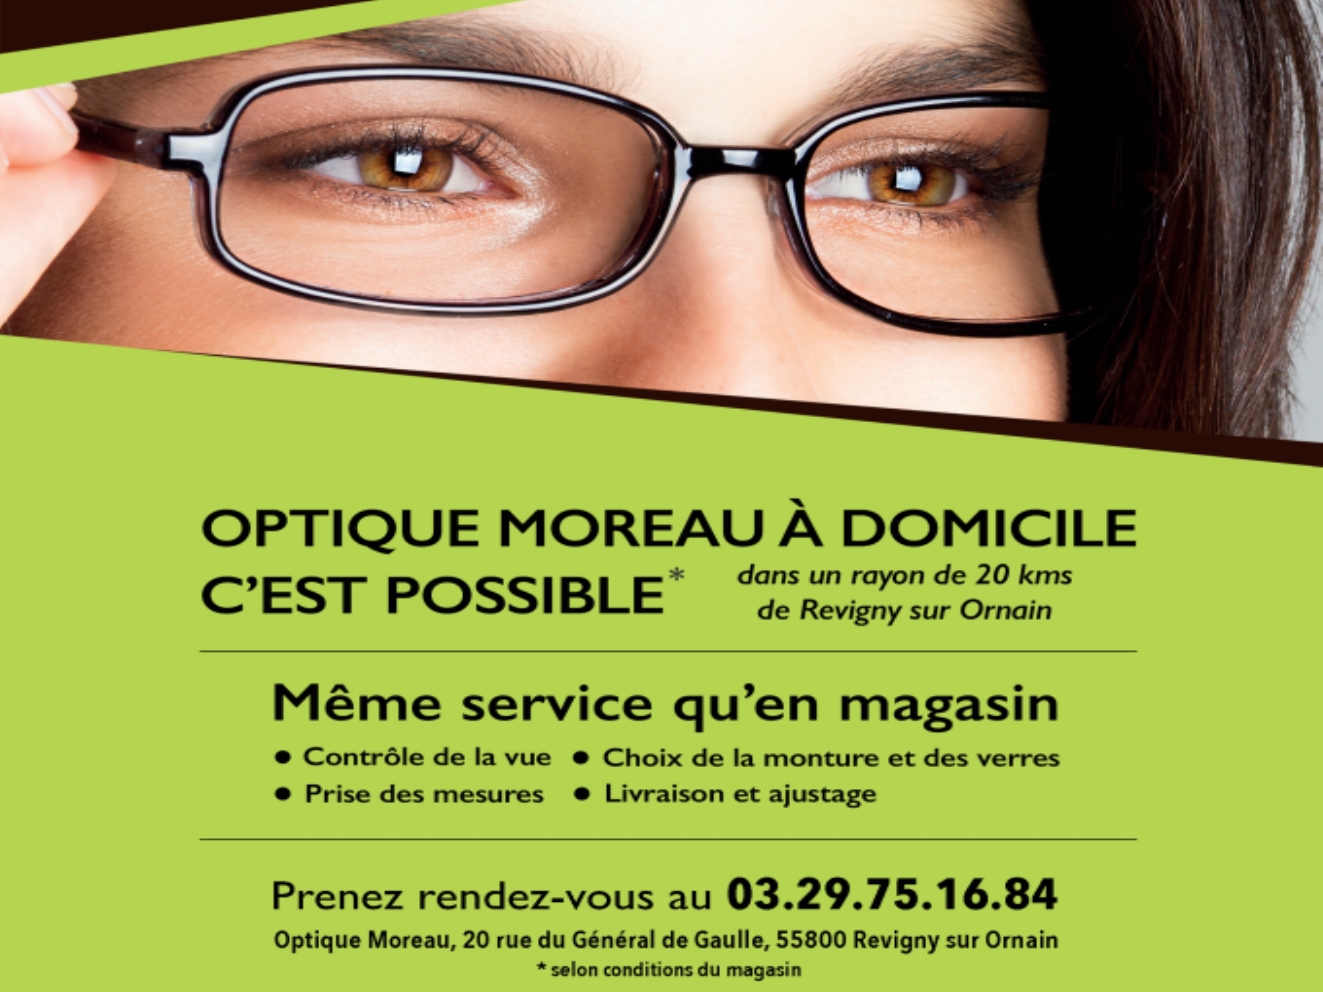 Actualité optique opticien : Optique Moreau à domicile, c'est possible.